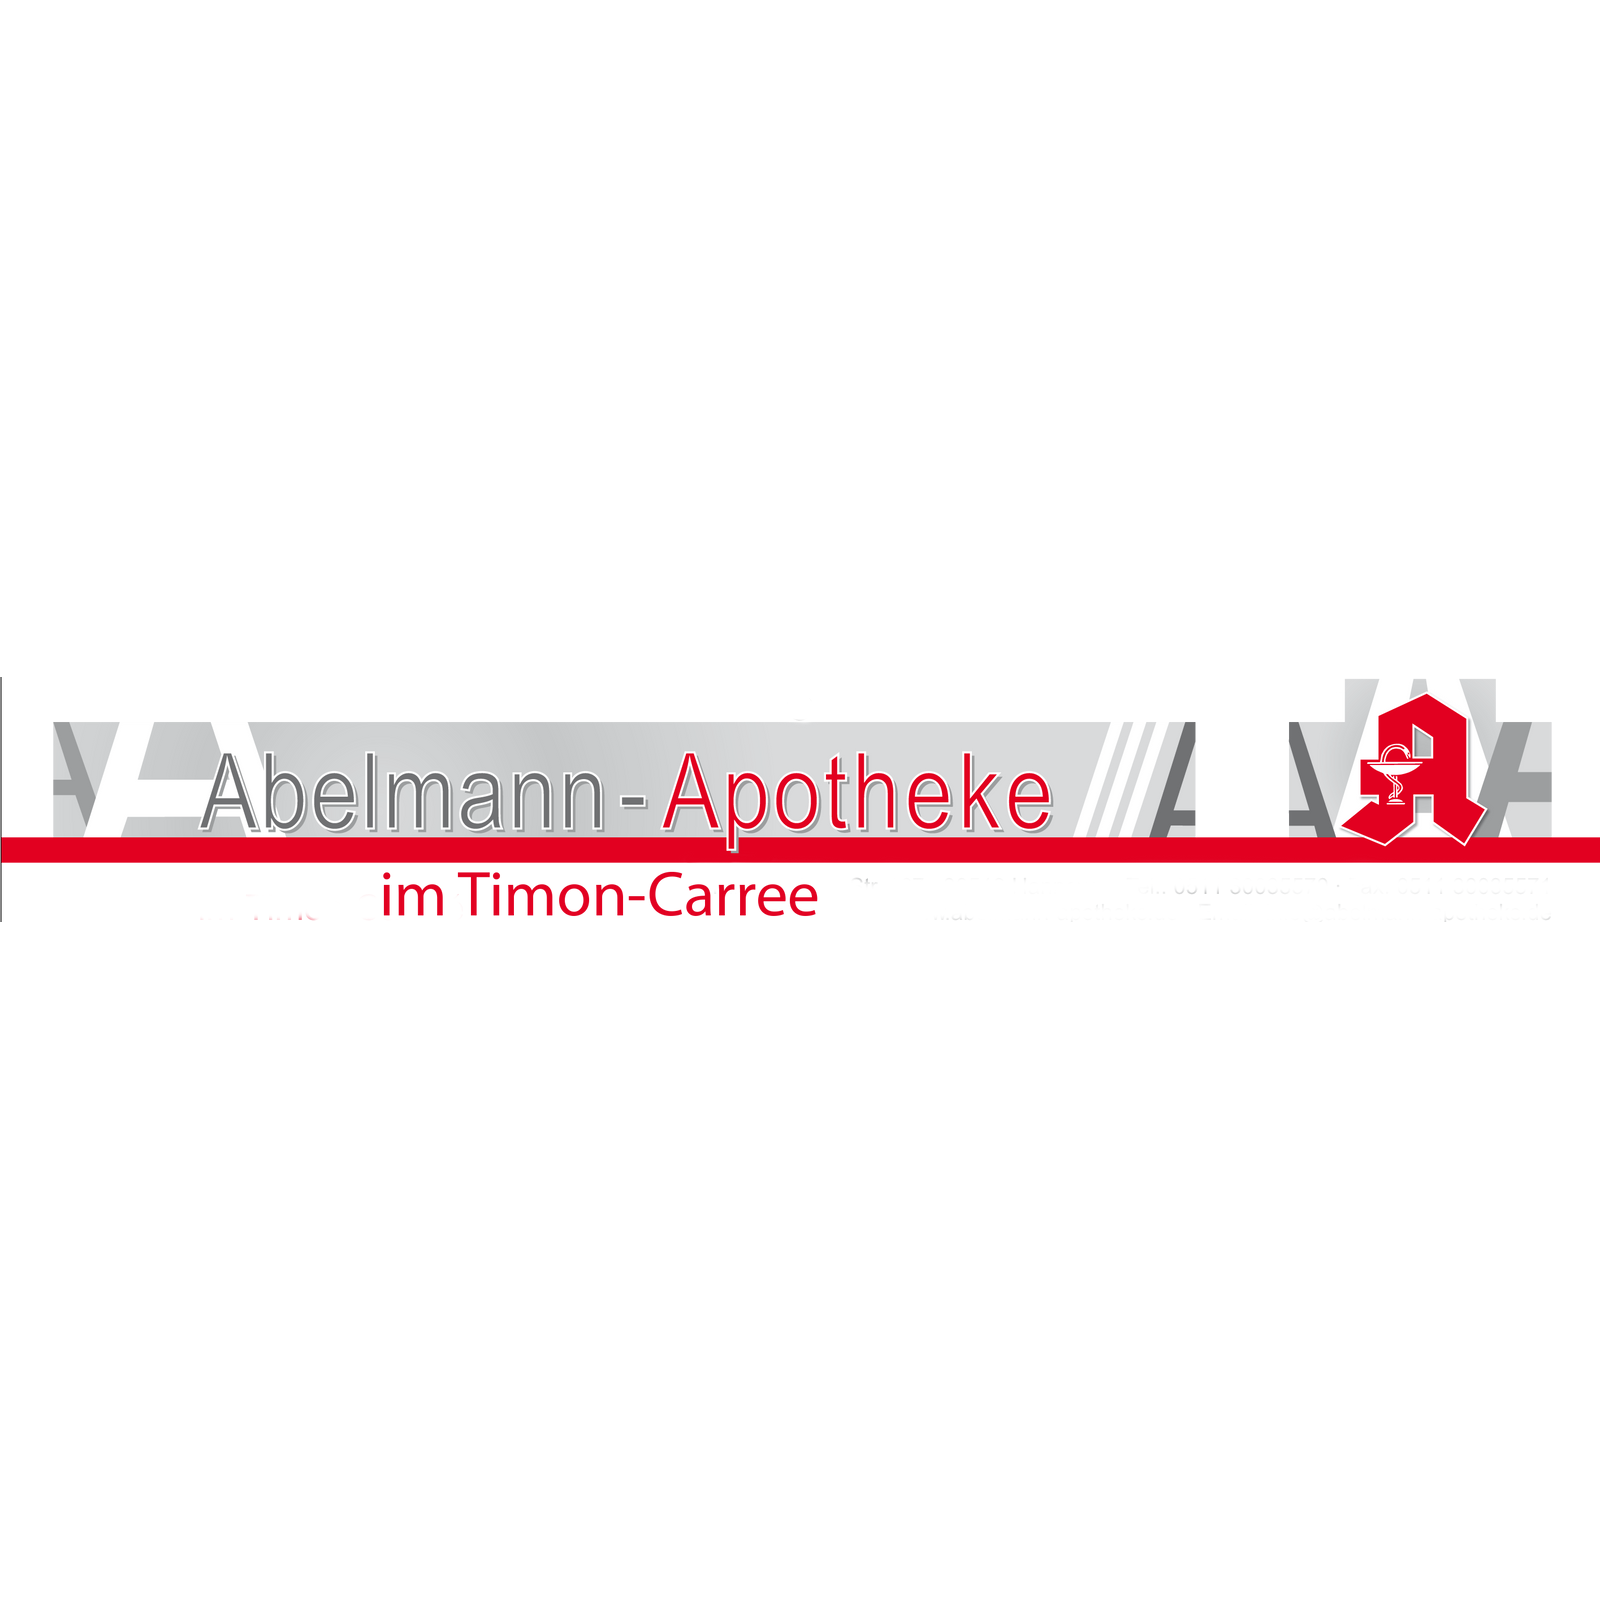 Logo der Abelmann-Apotheke im Timon-Carrée